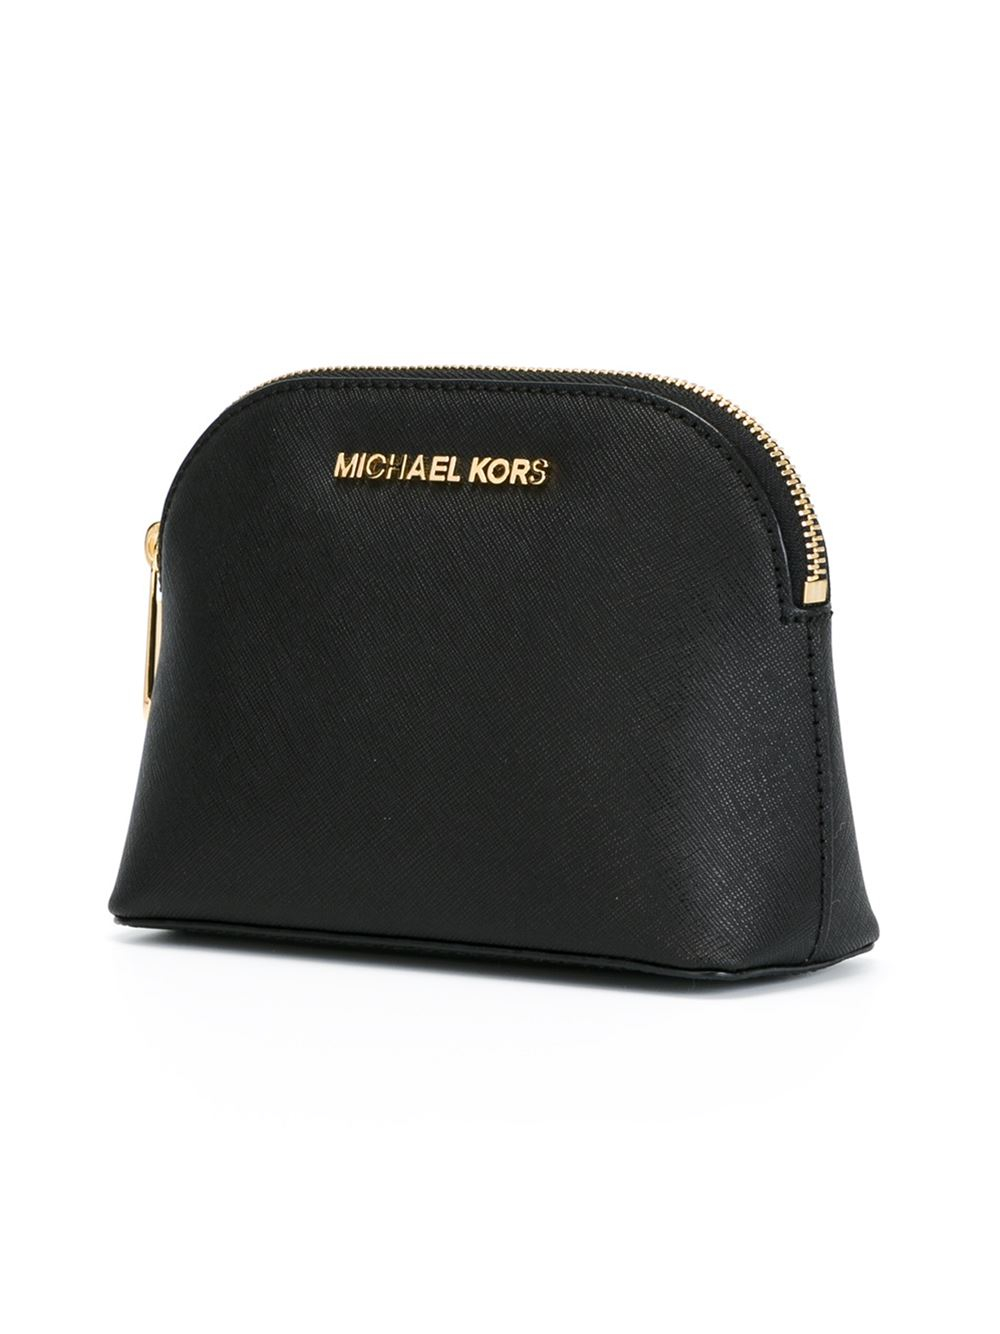 MK cosmetic bag